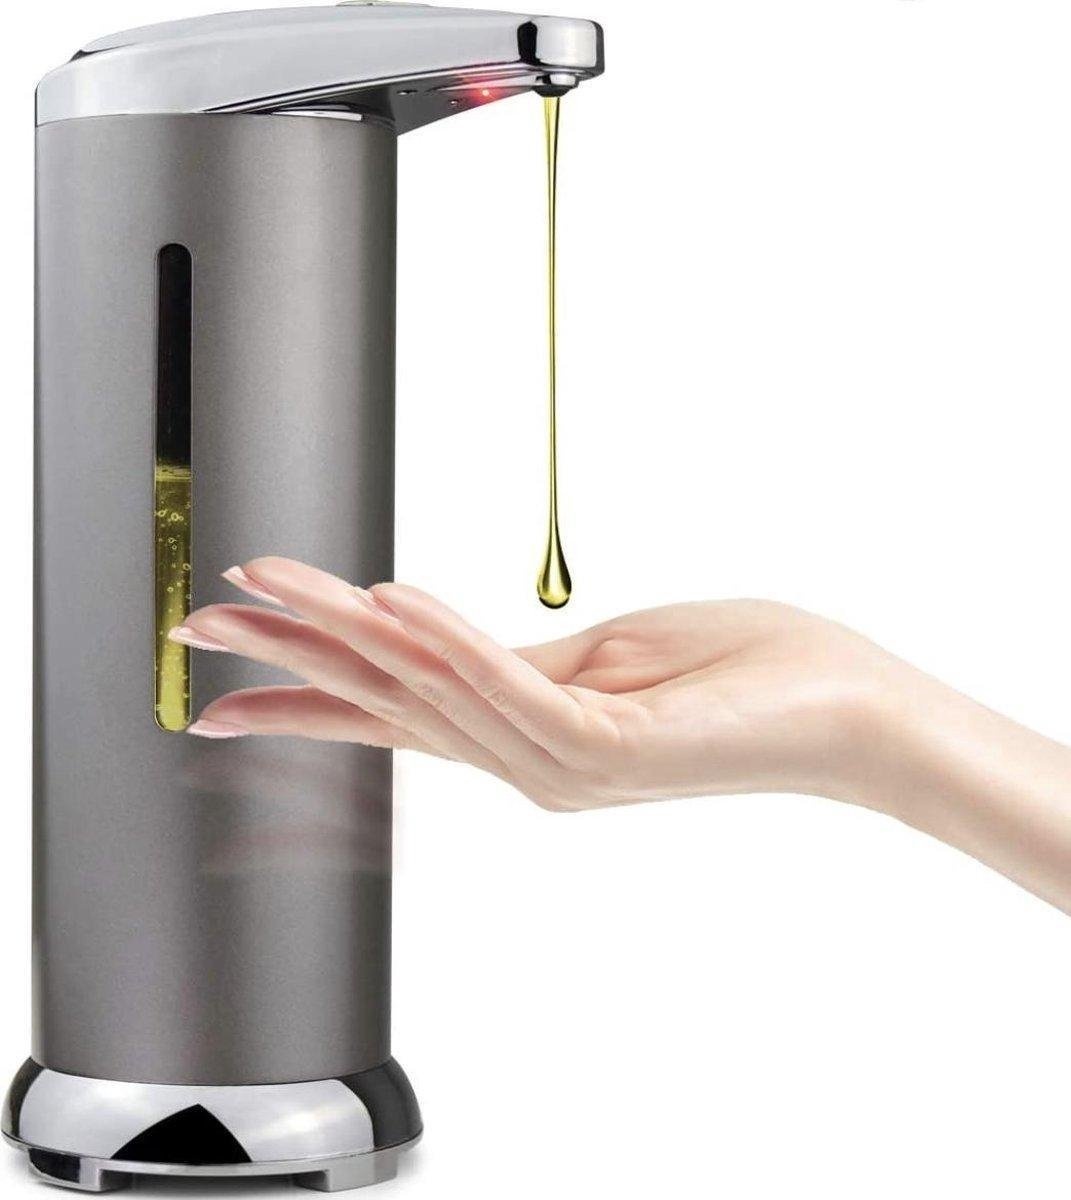 Touch+RFID günstig Kaufen-Parya Official automatischer Seifenspender - Seifenpumpe - Infrarotsensor - Händewaschen - Desinfektionspumpe - no touch. Parya Official automatischer Seifenspender - Seifenpumpe - Infrarotsensor - Händewaschen - Desinfektionspumpe - no touch <!